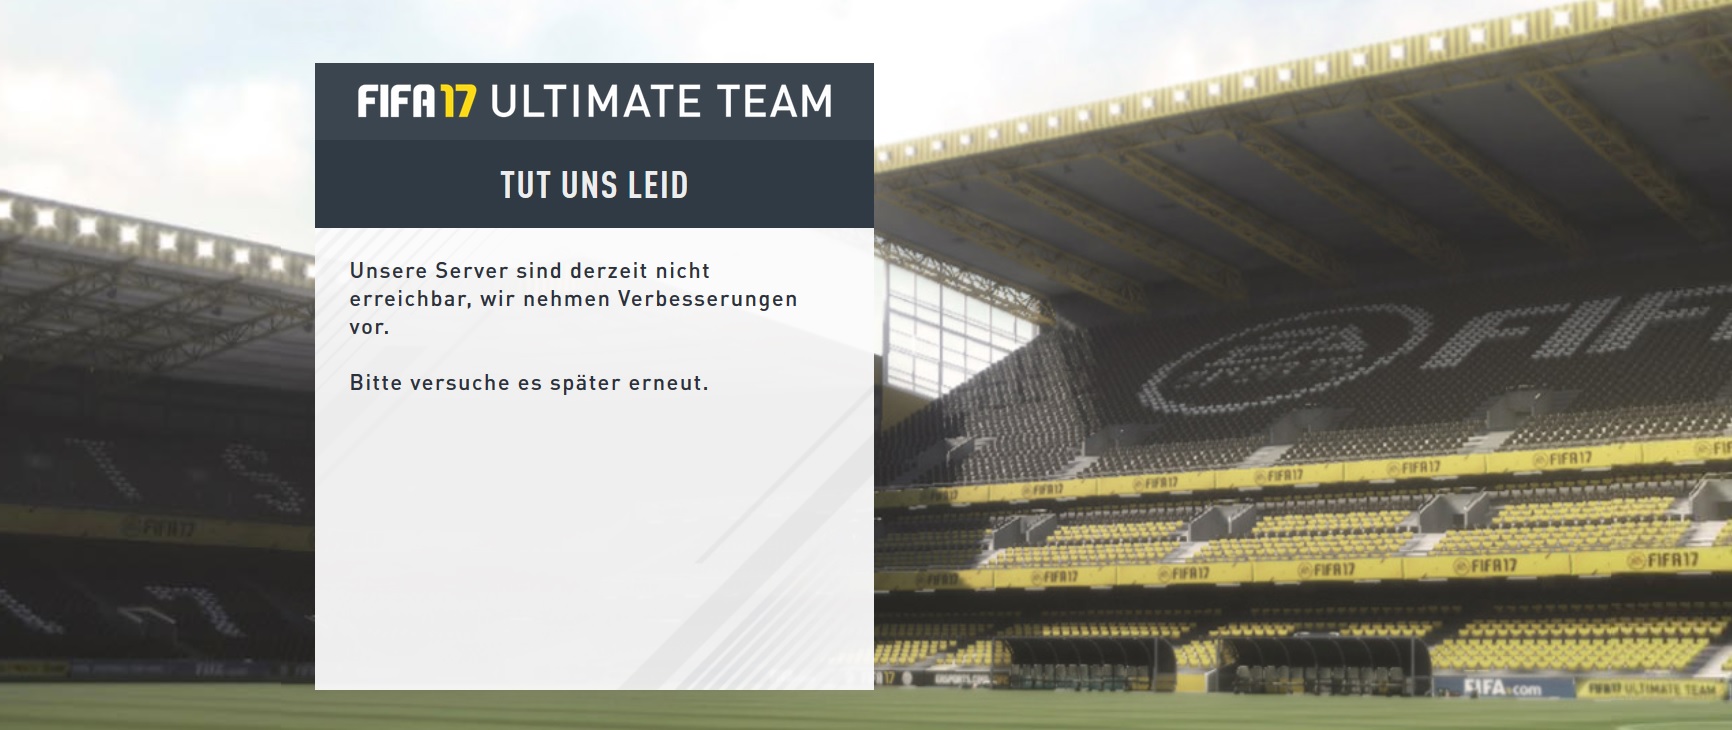 FIFA 17 Web App: Anmelden geht nicht - Server-Probleme ...